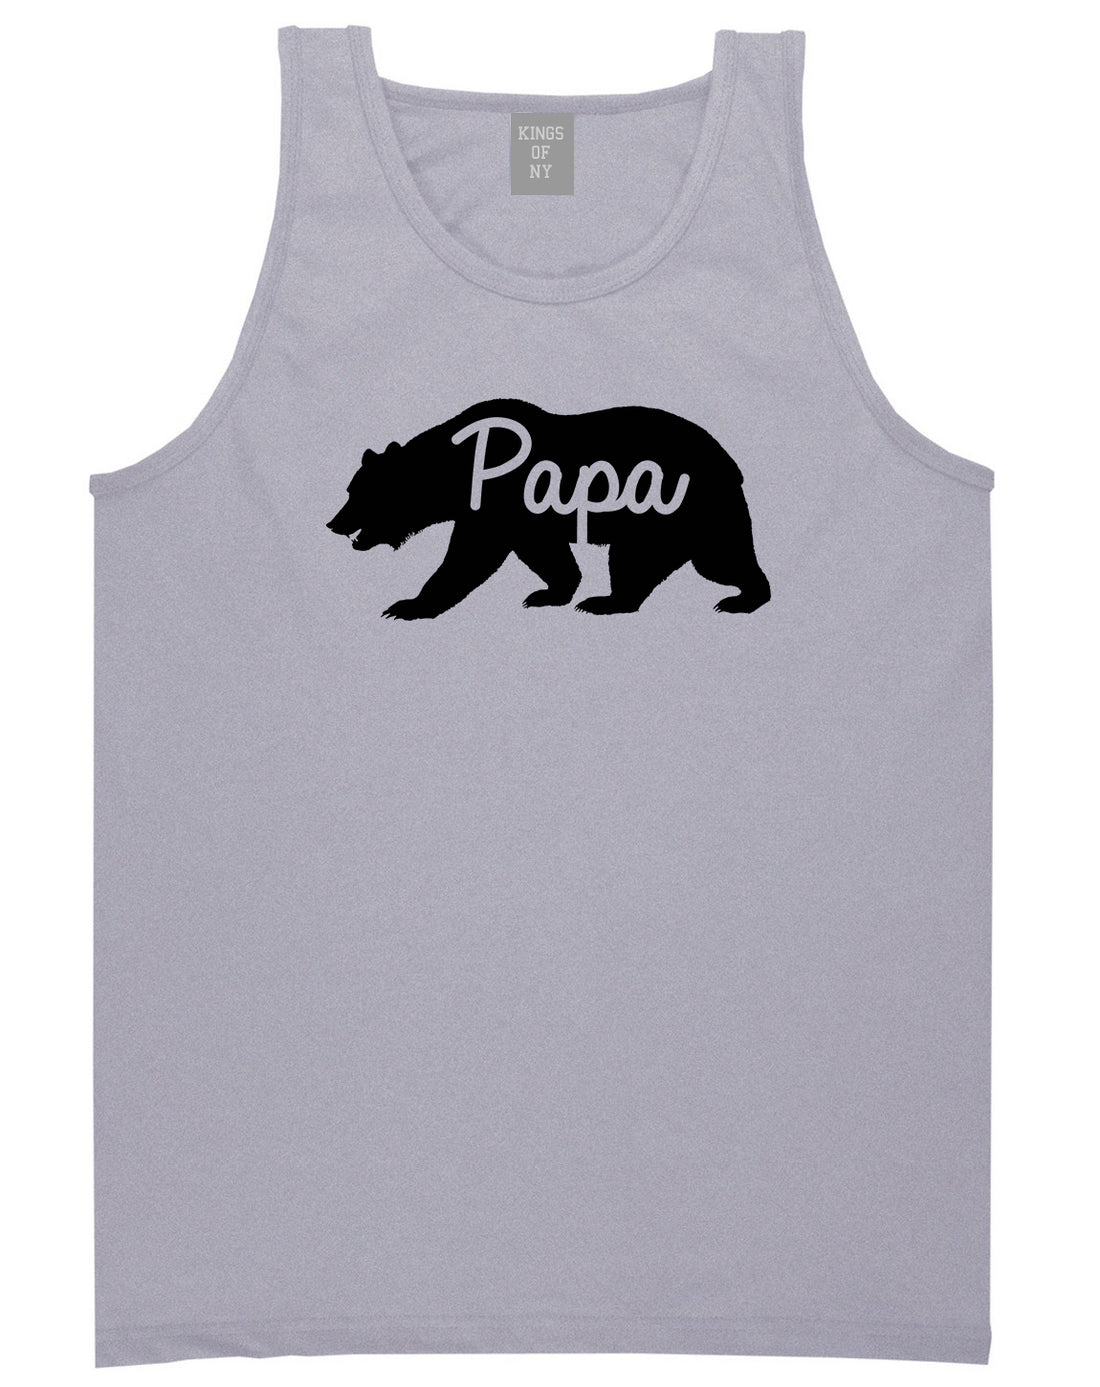 Papa Bear Mens Tank Top Shirt Grey by Kings Of NY